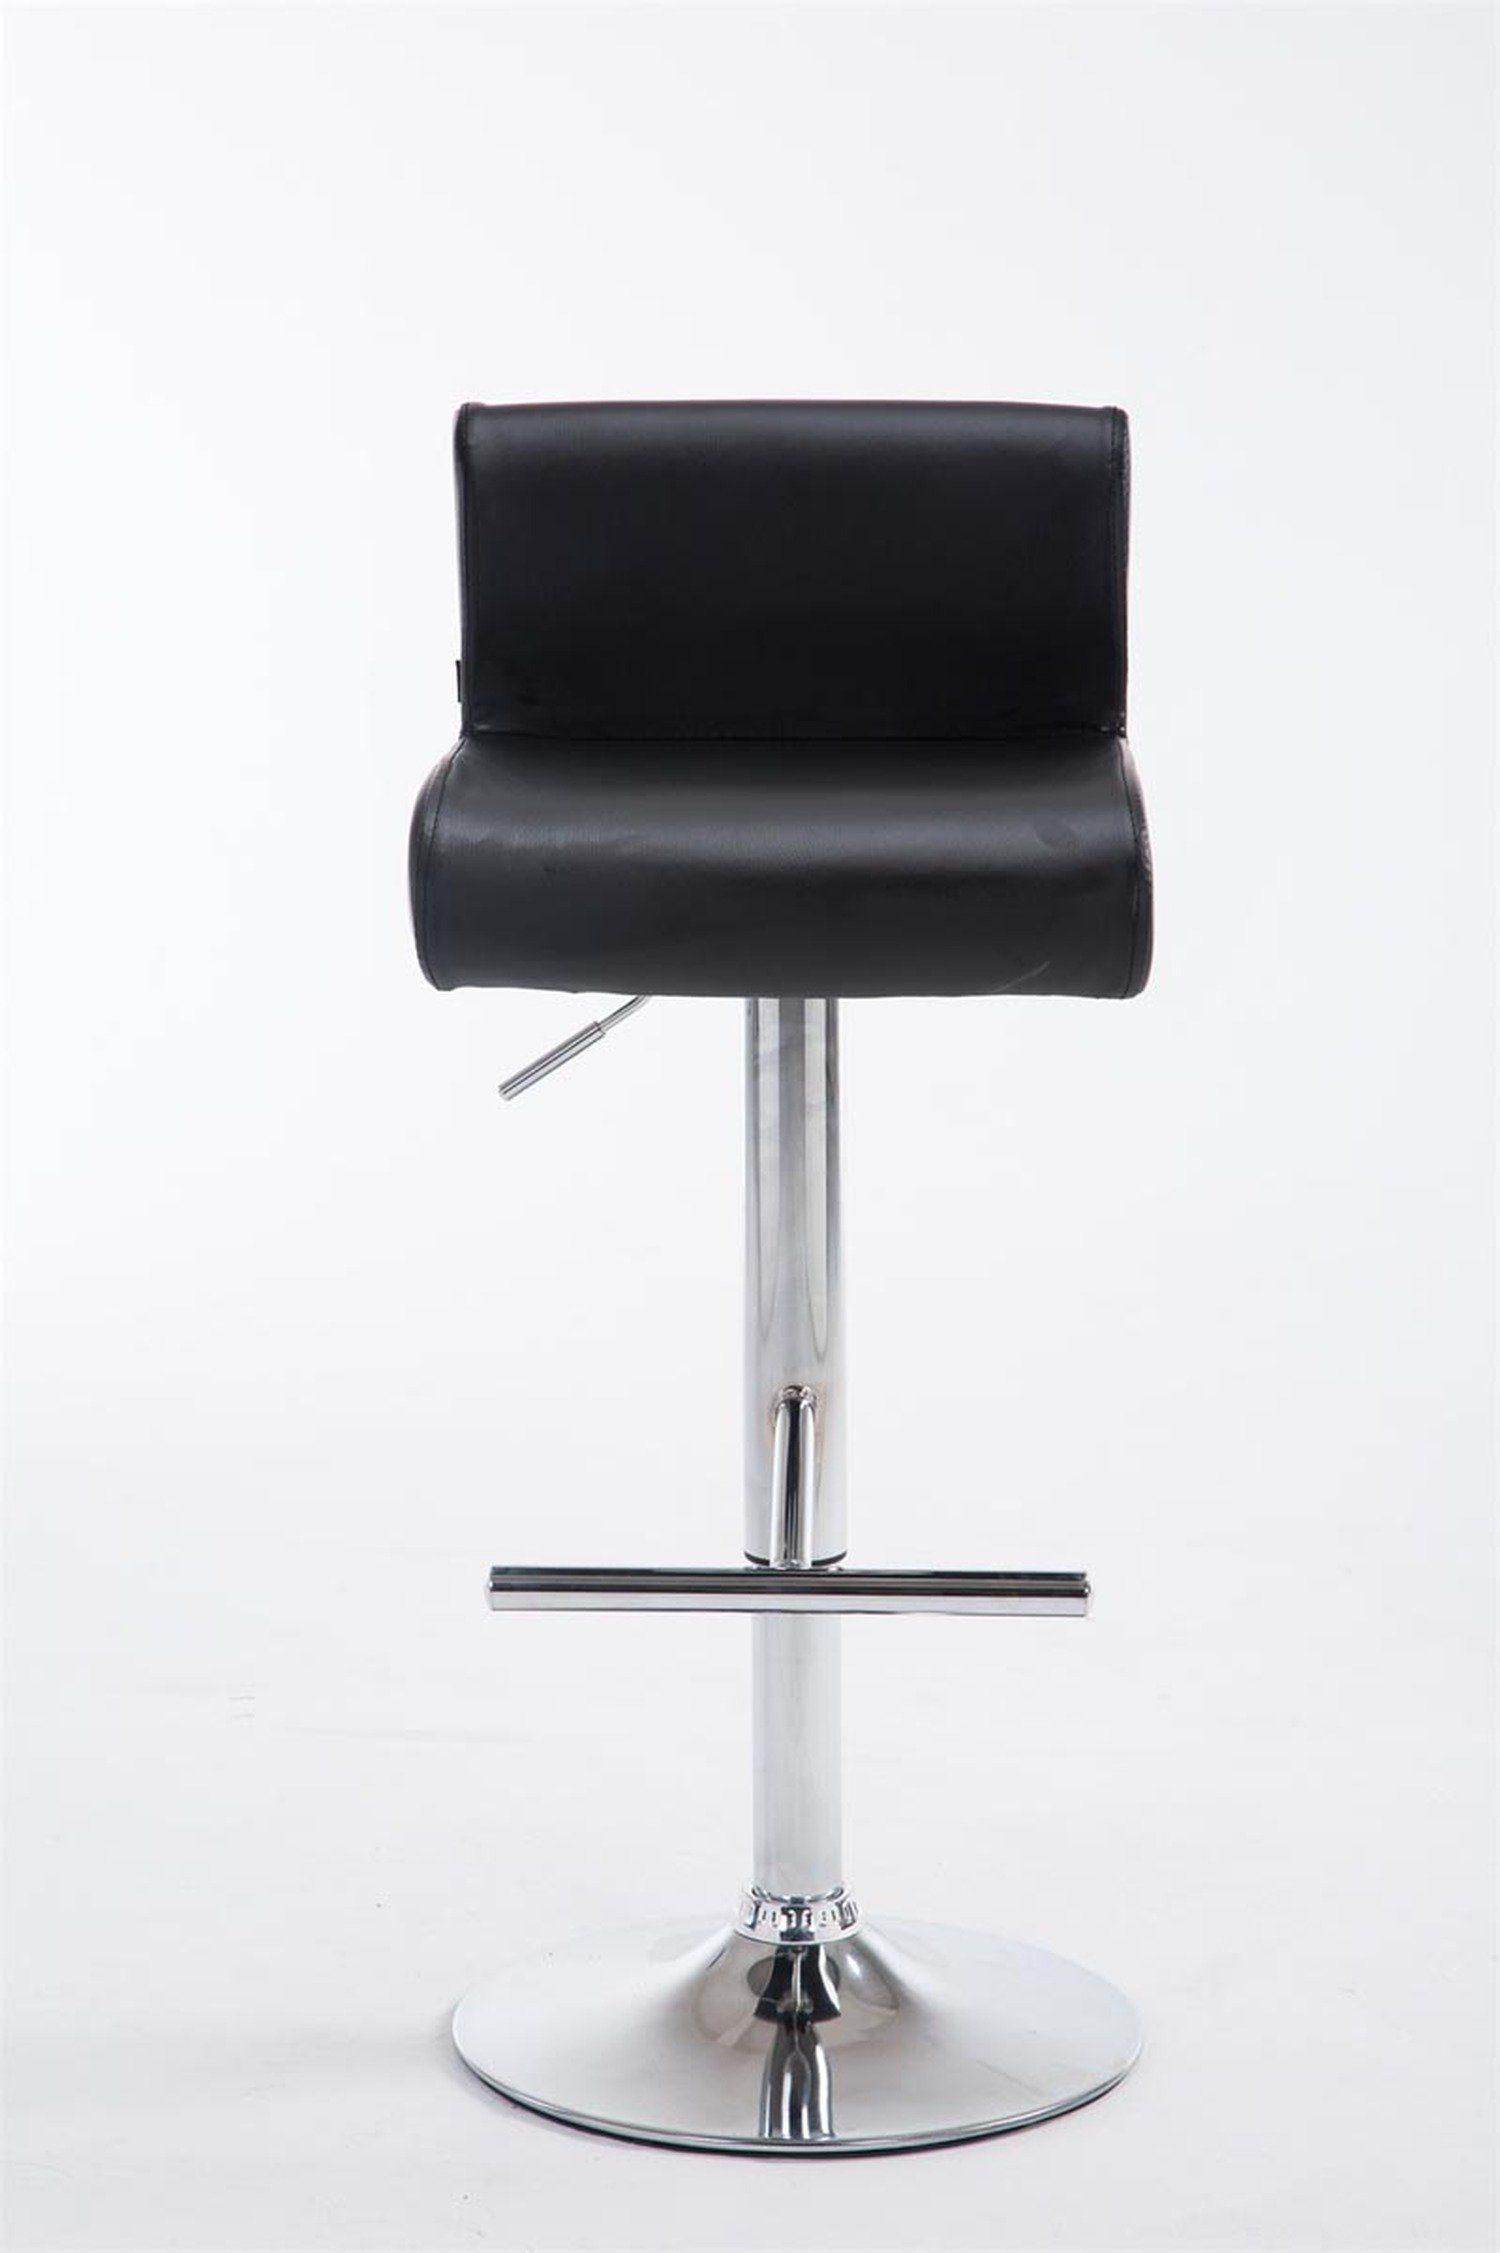 & TPFLiving Barhocker Kunstleder Schwarz Stahl - Calif (Barstuhl höhenverstellbar chromfarbener Tresenhocker), - Theke - 360° für drehbar Hocker - Küche Sitzfläche: